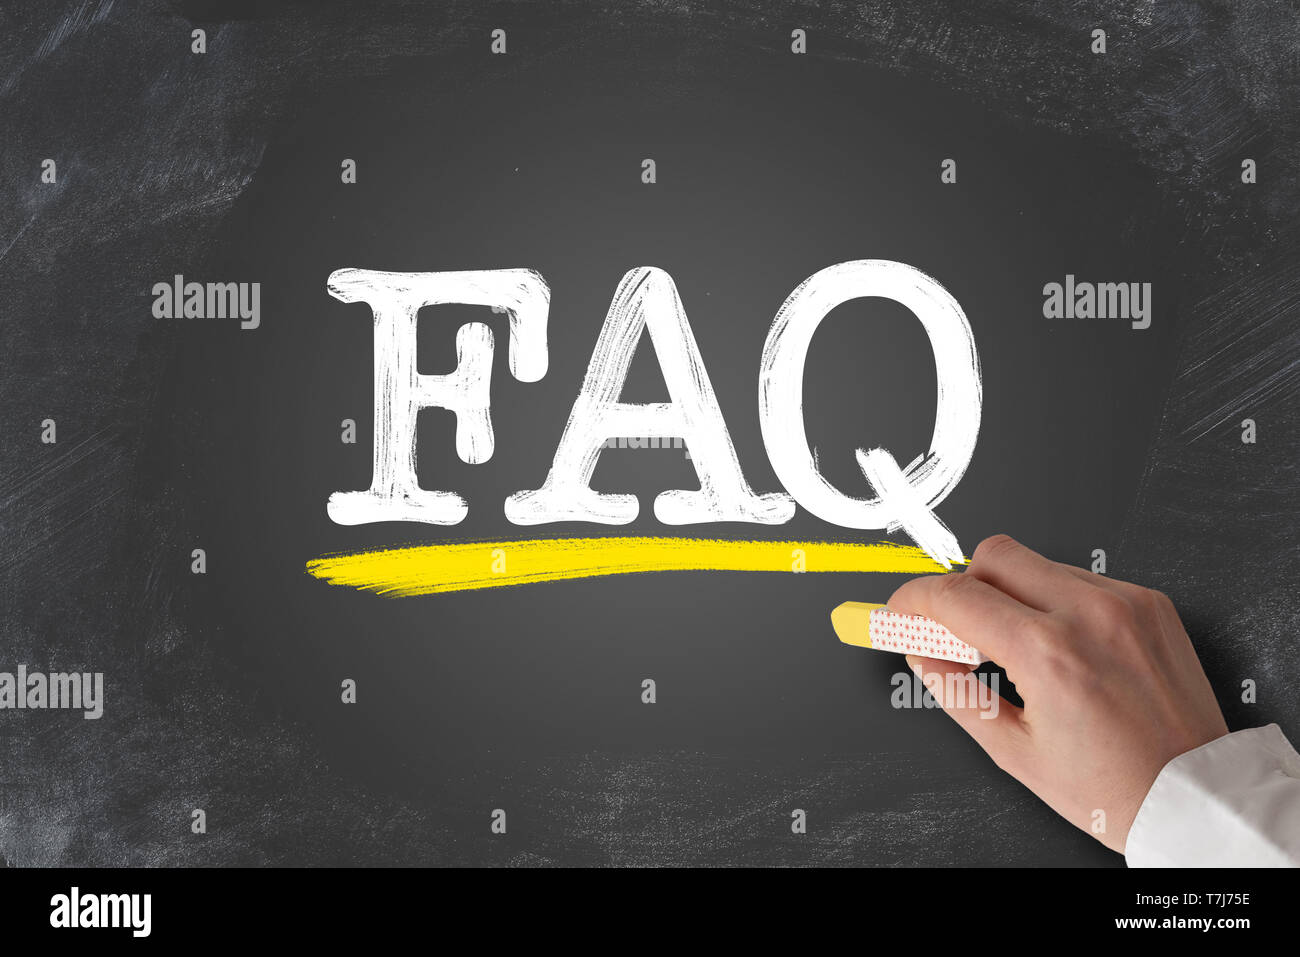 Begriff FAQ, Häufig gestellte Fragen, auf die Tafel geschrieben Stockfoto